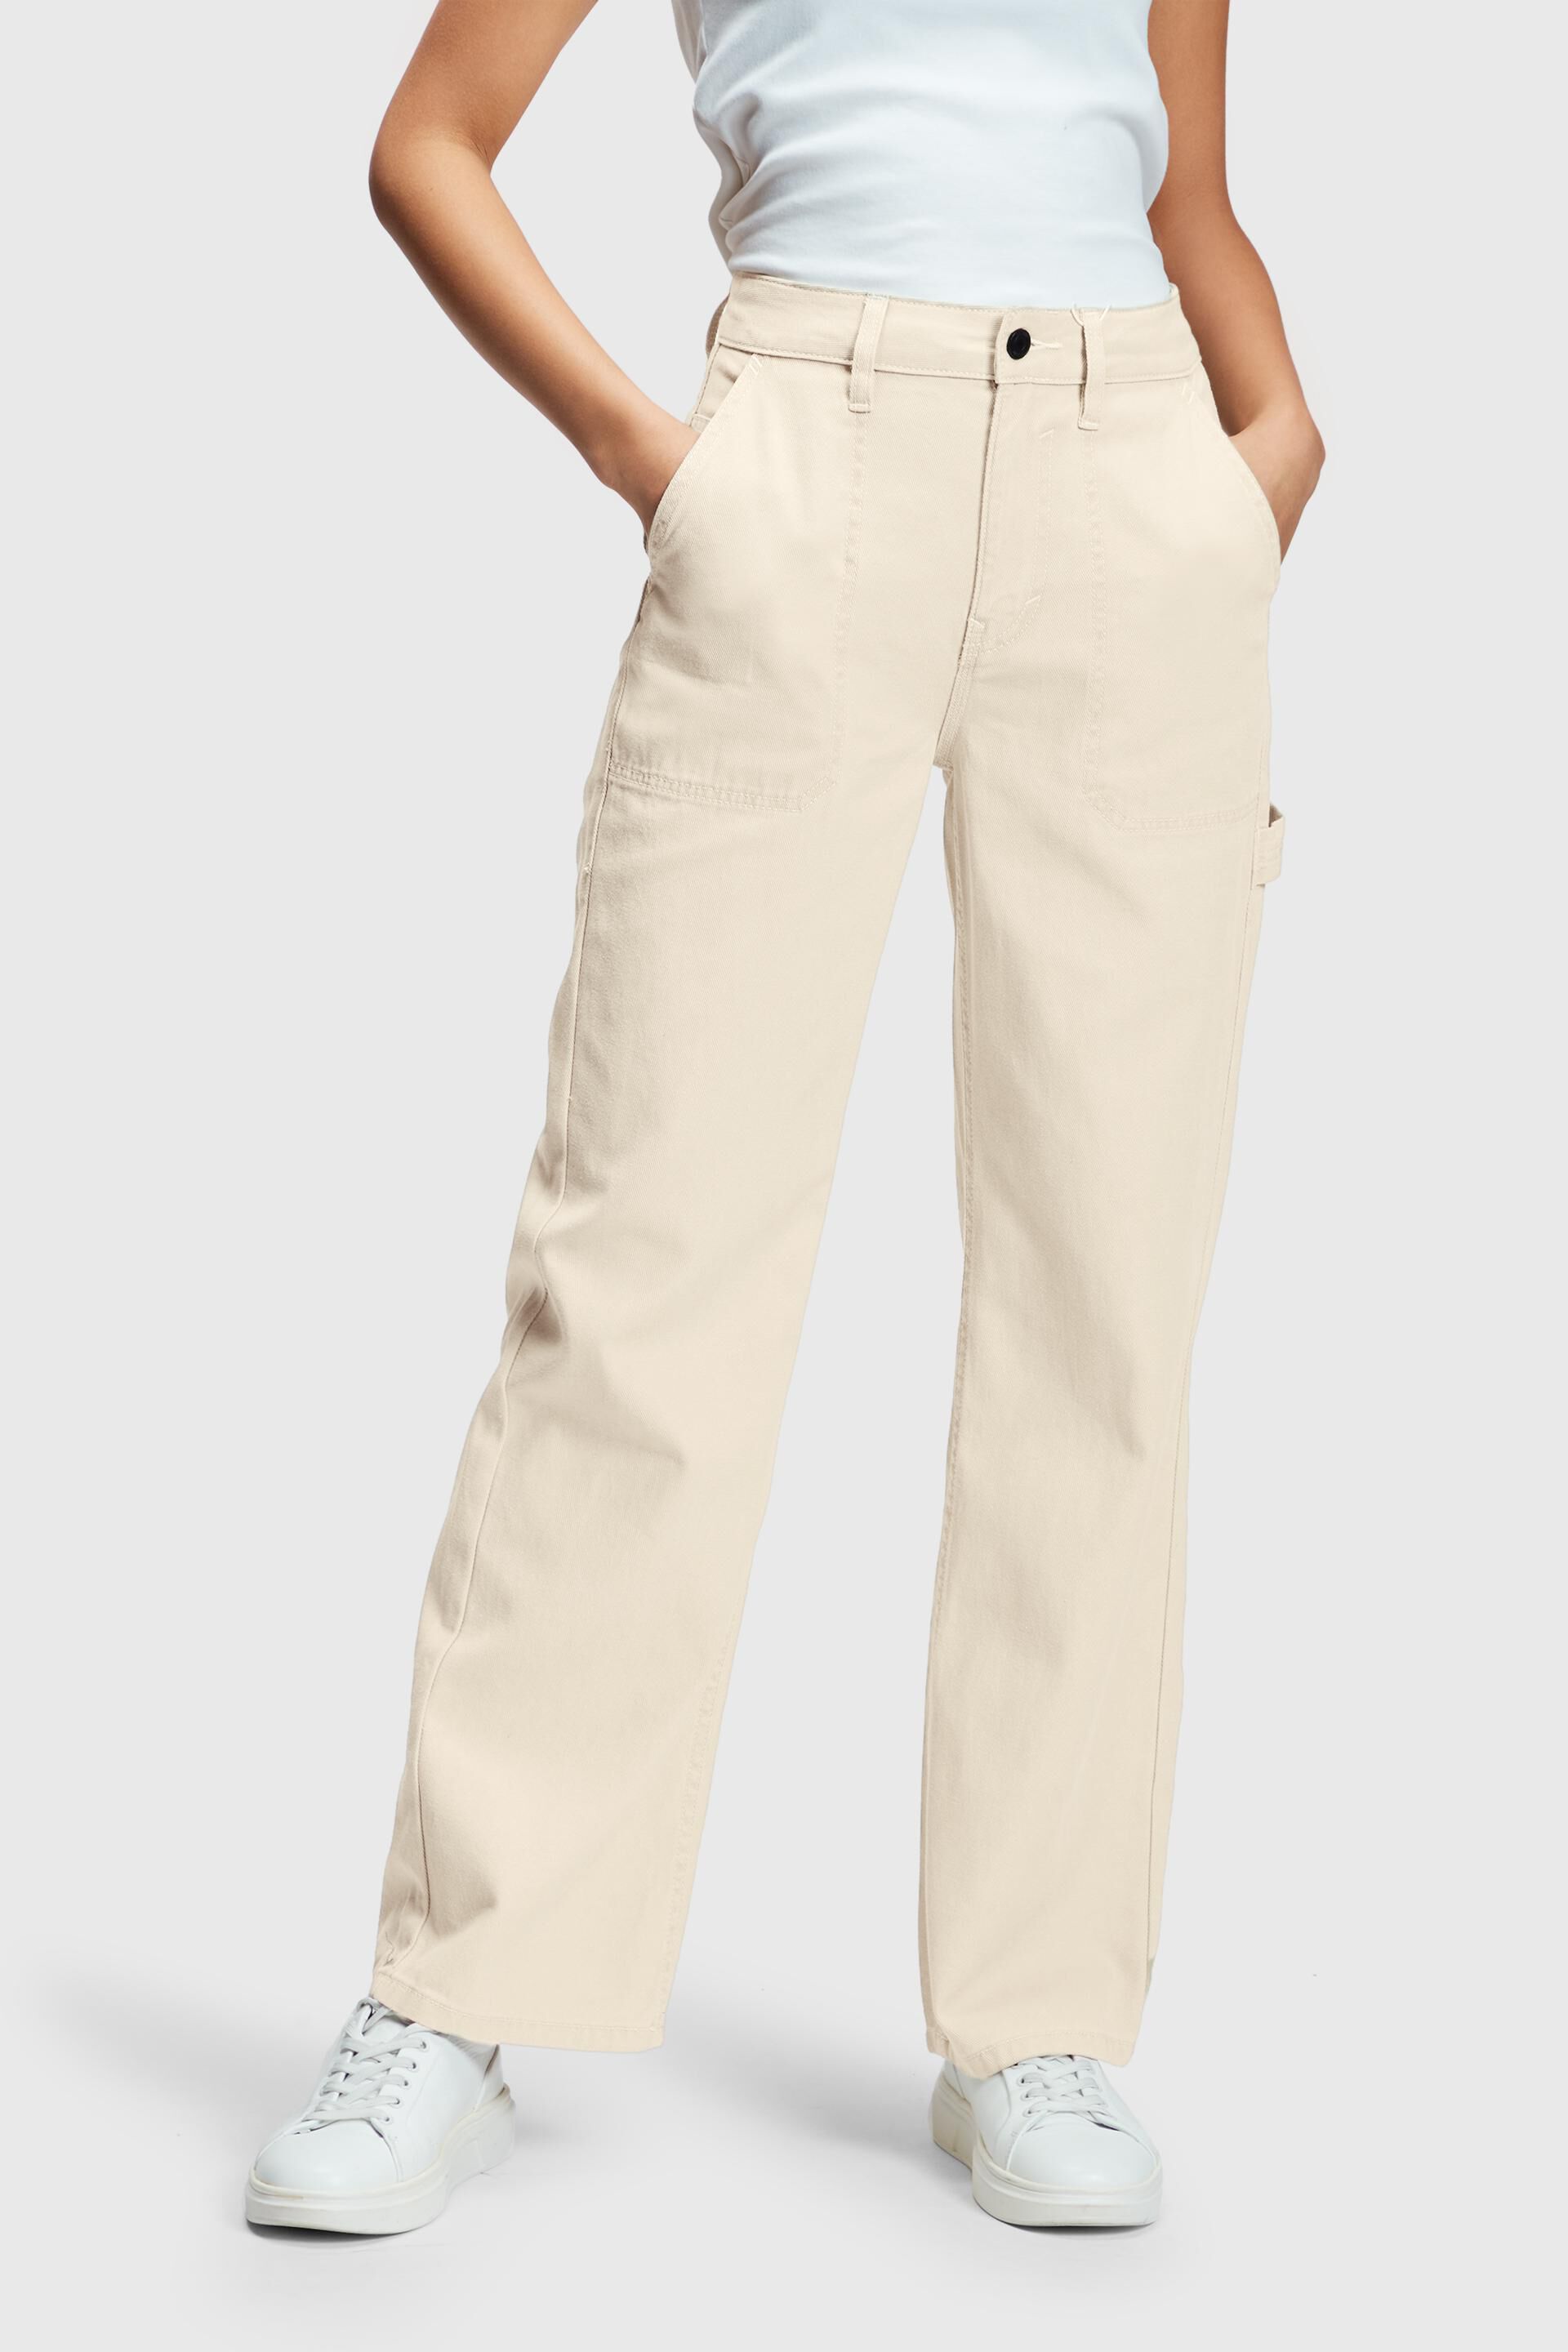 Esprit Damen Workwear-Jeans mit hohem Bund und geradem Bein im 90er-Jahre-Stil